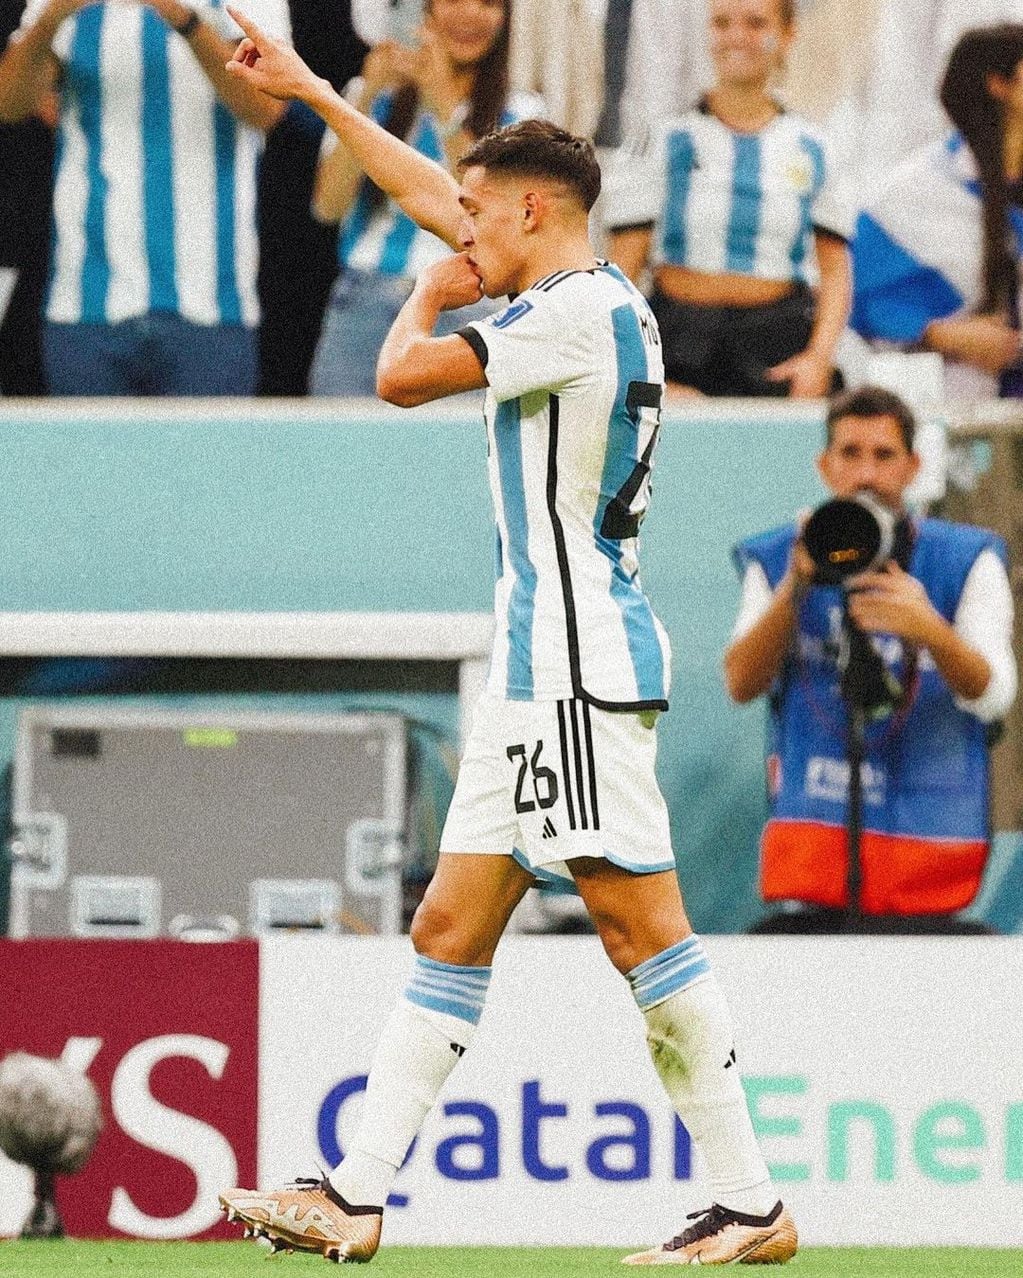 El lateral cordobés marcó el primer gol del partido entre Argentina y Países Bajos.